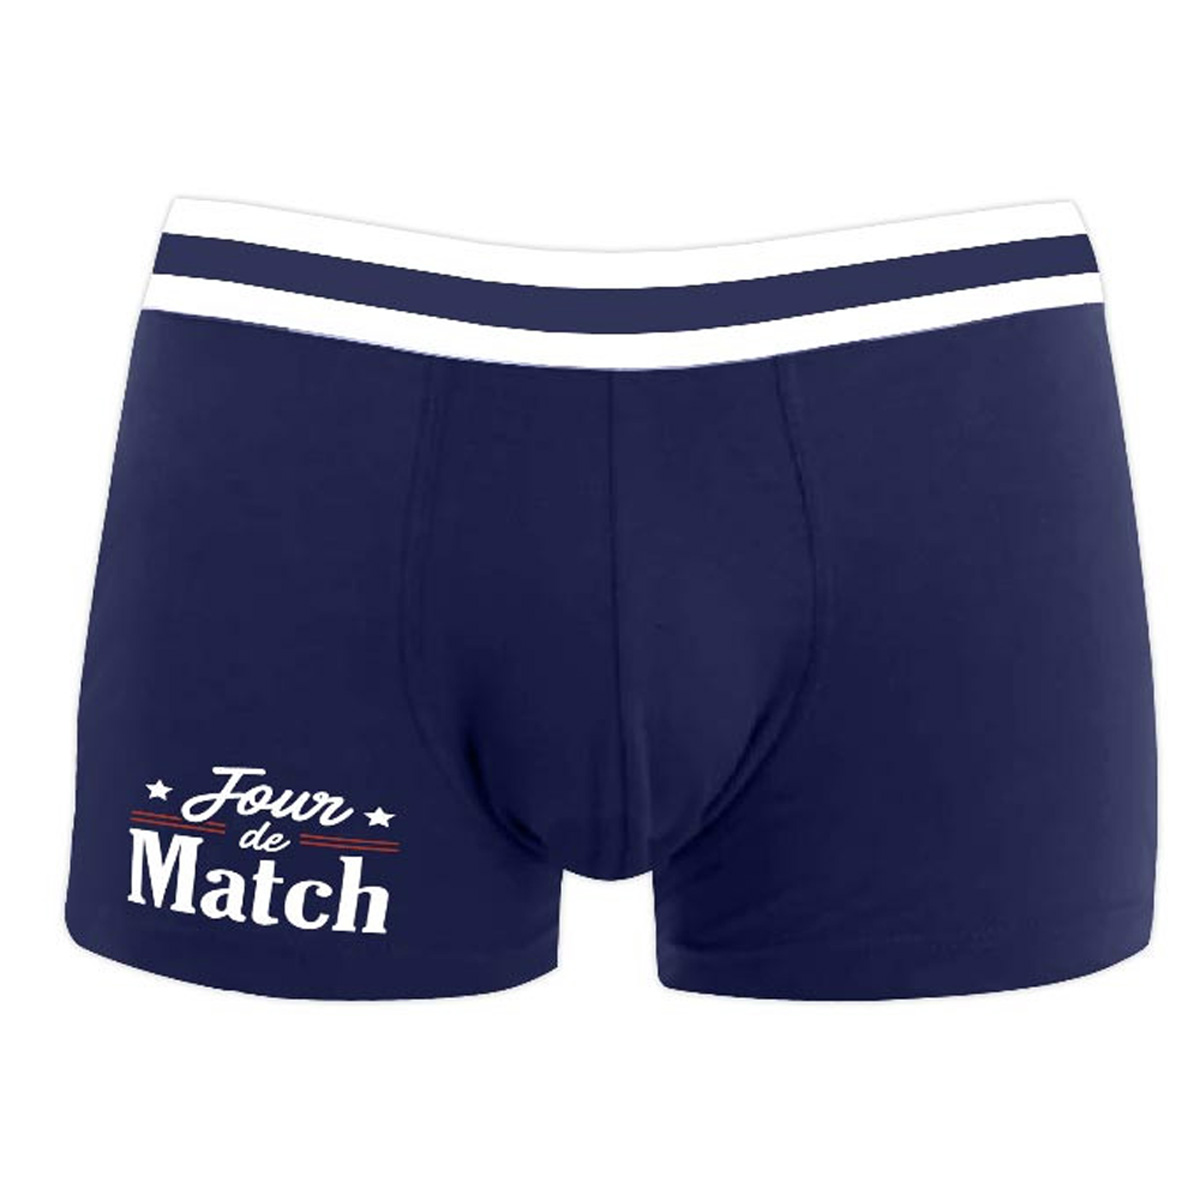 Boxer coton \'Jour de Match\' marine - taille M - [A3761]